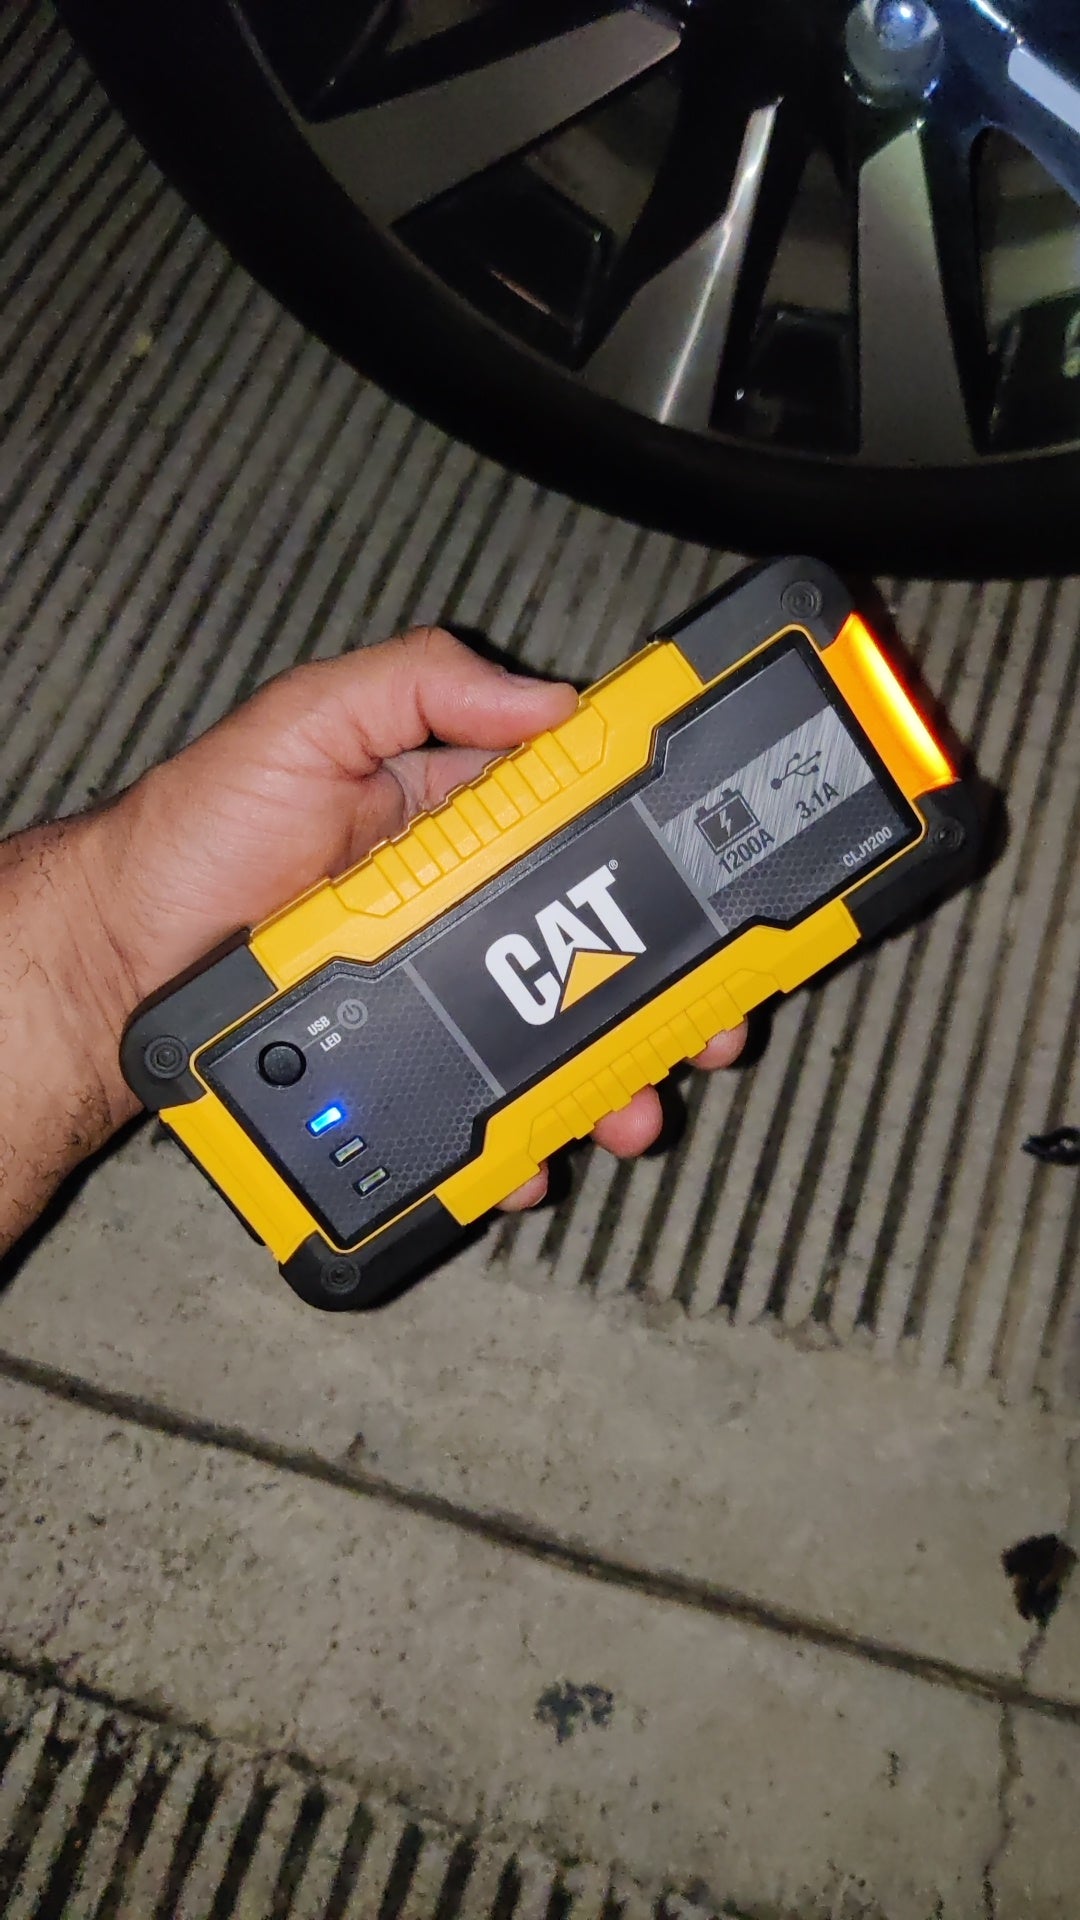 CAT Arrancador de Baterías de Iones de Litio con Amperaje Máximo de  Arranque de 1200, Automotriz, Pricesmart, Santa Ana